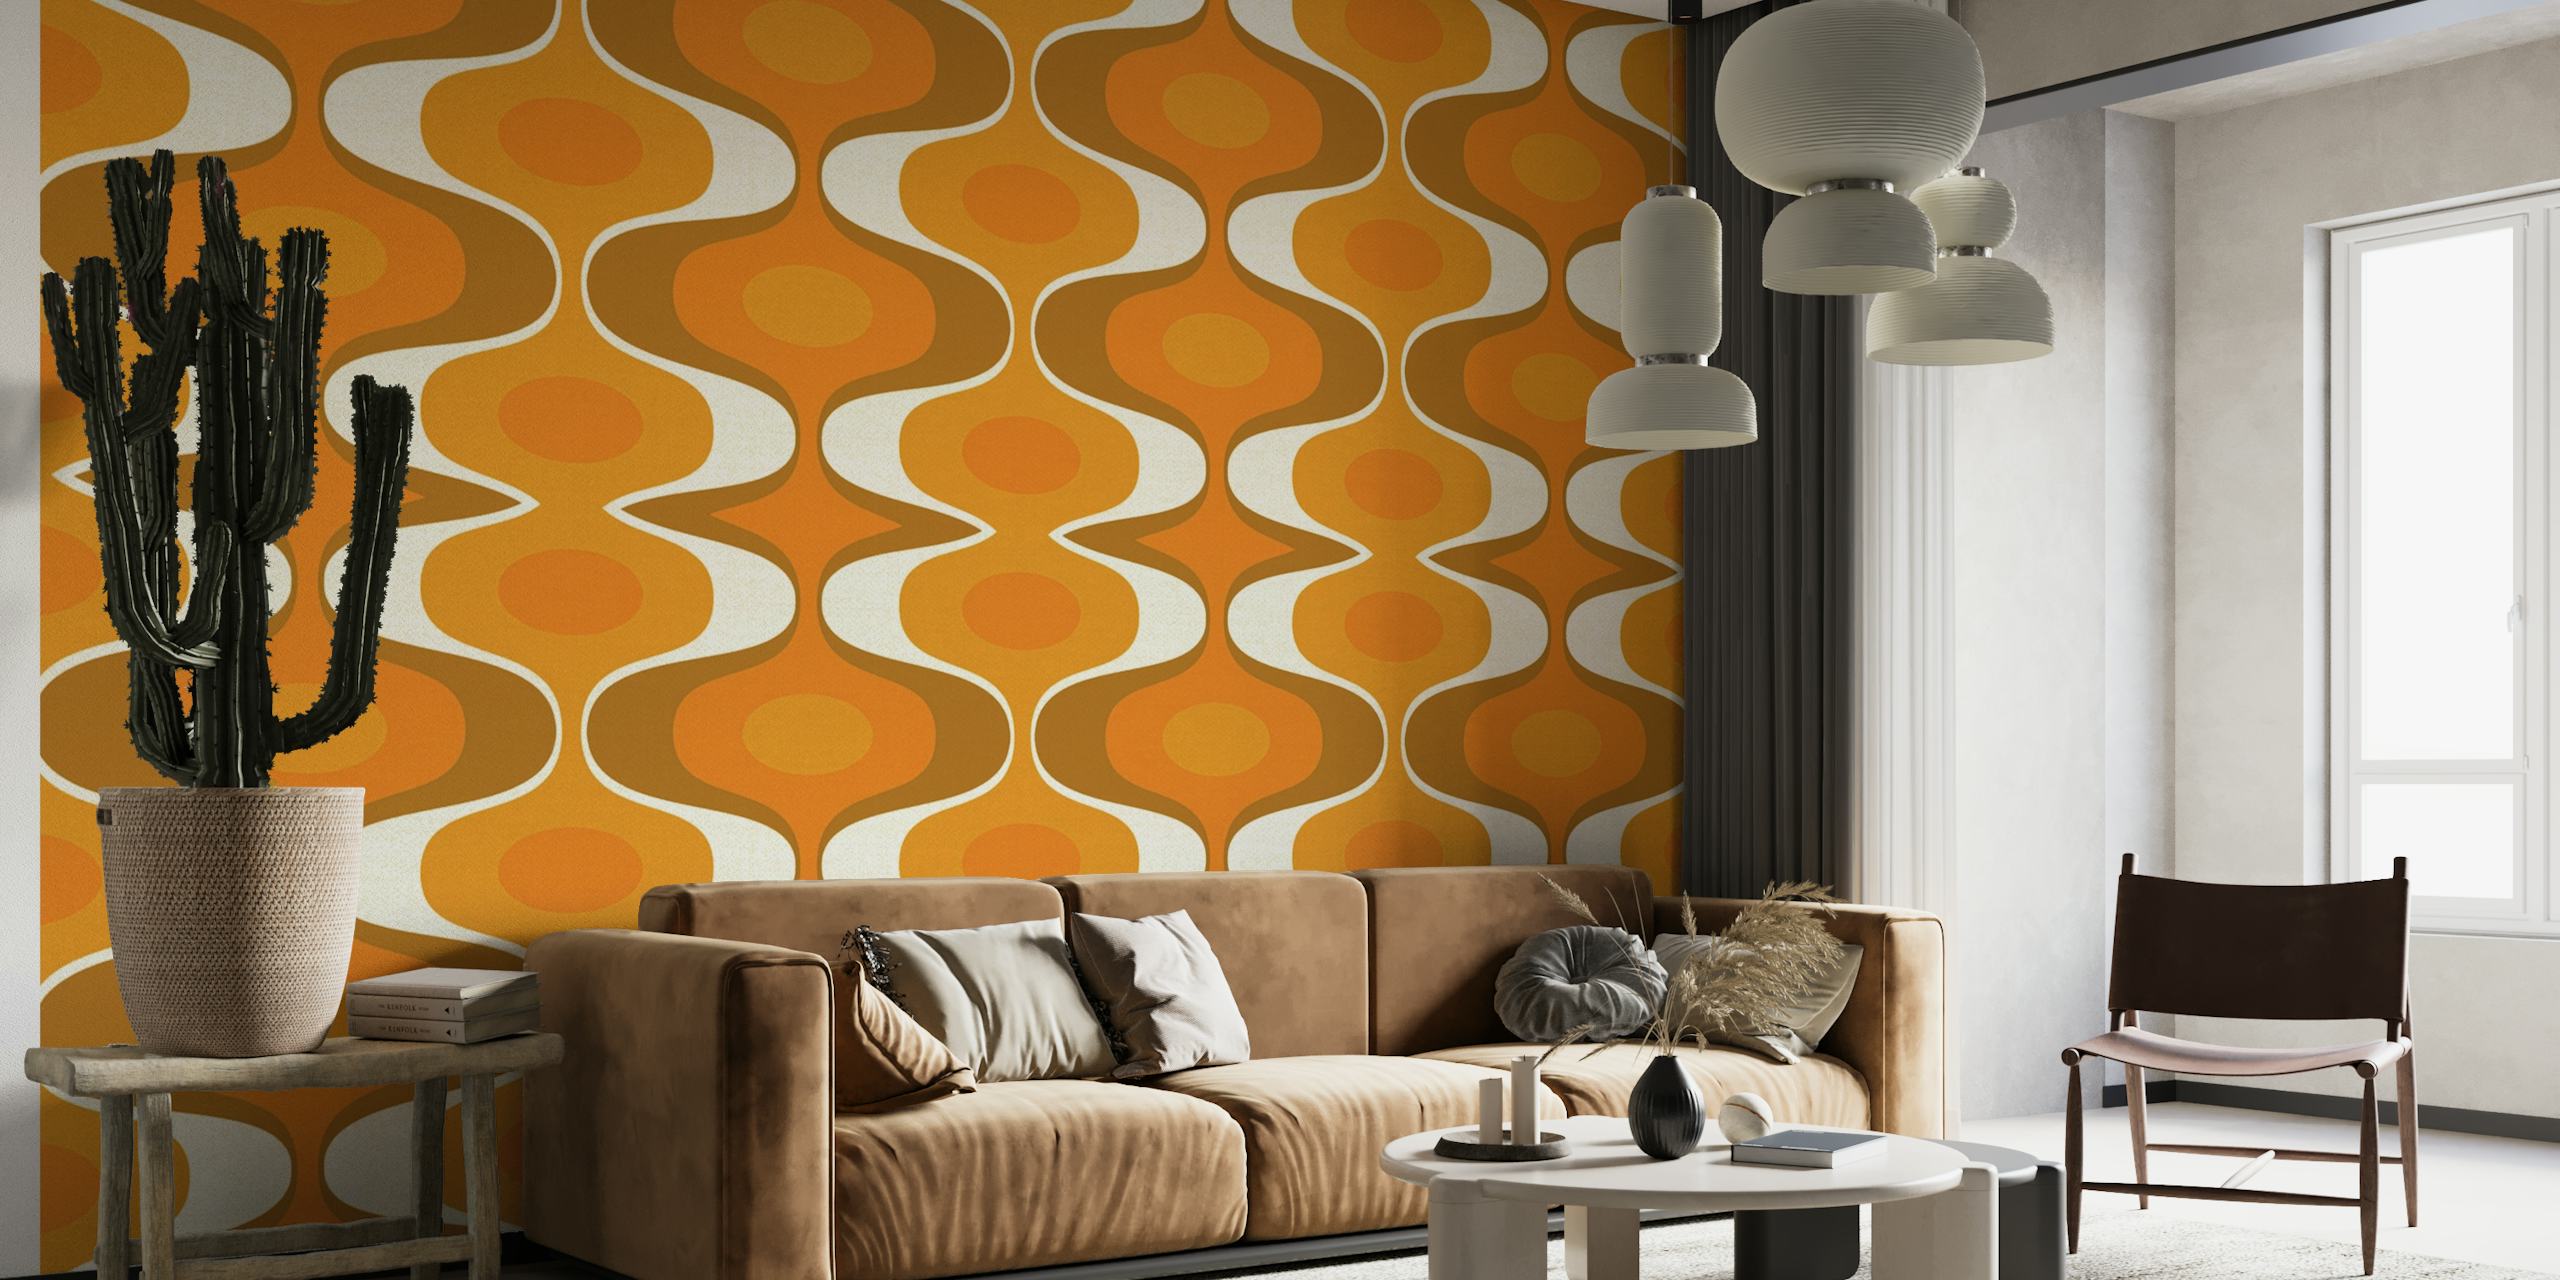 Muurschildering met geometrisch patroon in oranje en aardetinten die de retrostijl uit de jaren 70 weerspiegelen